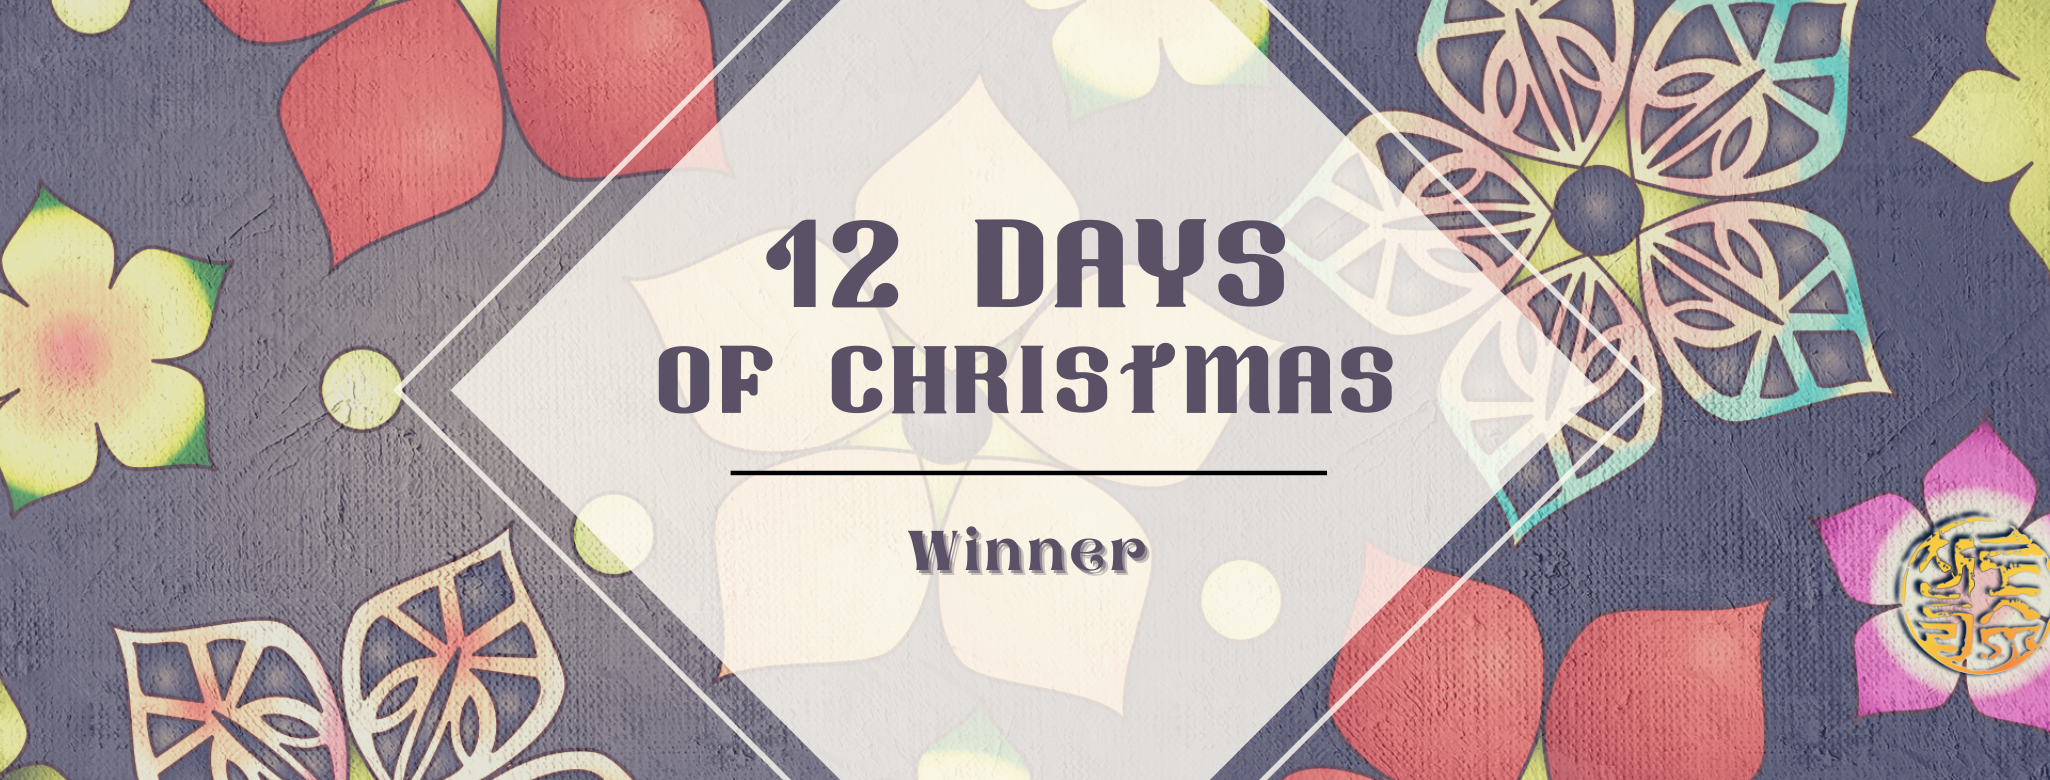 12 days of Christmas winner